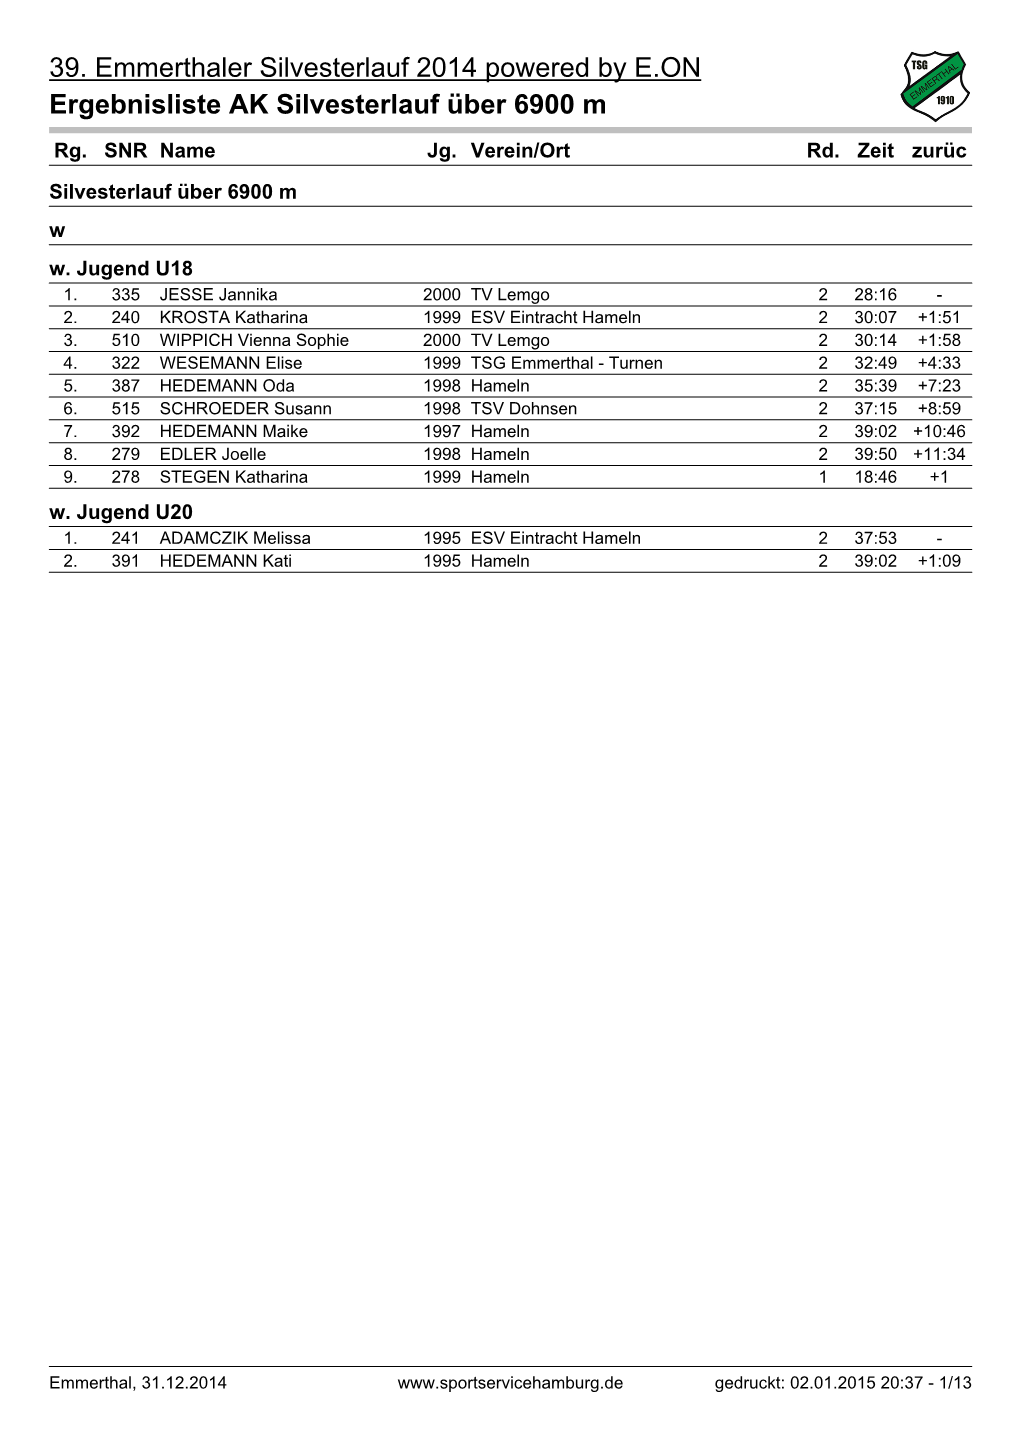 Ergebnisse Silvesterlauf Emmerthal 2014